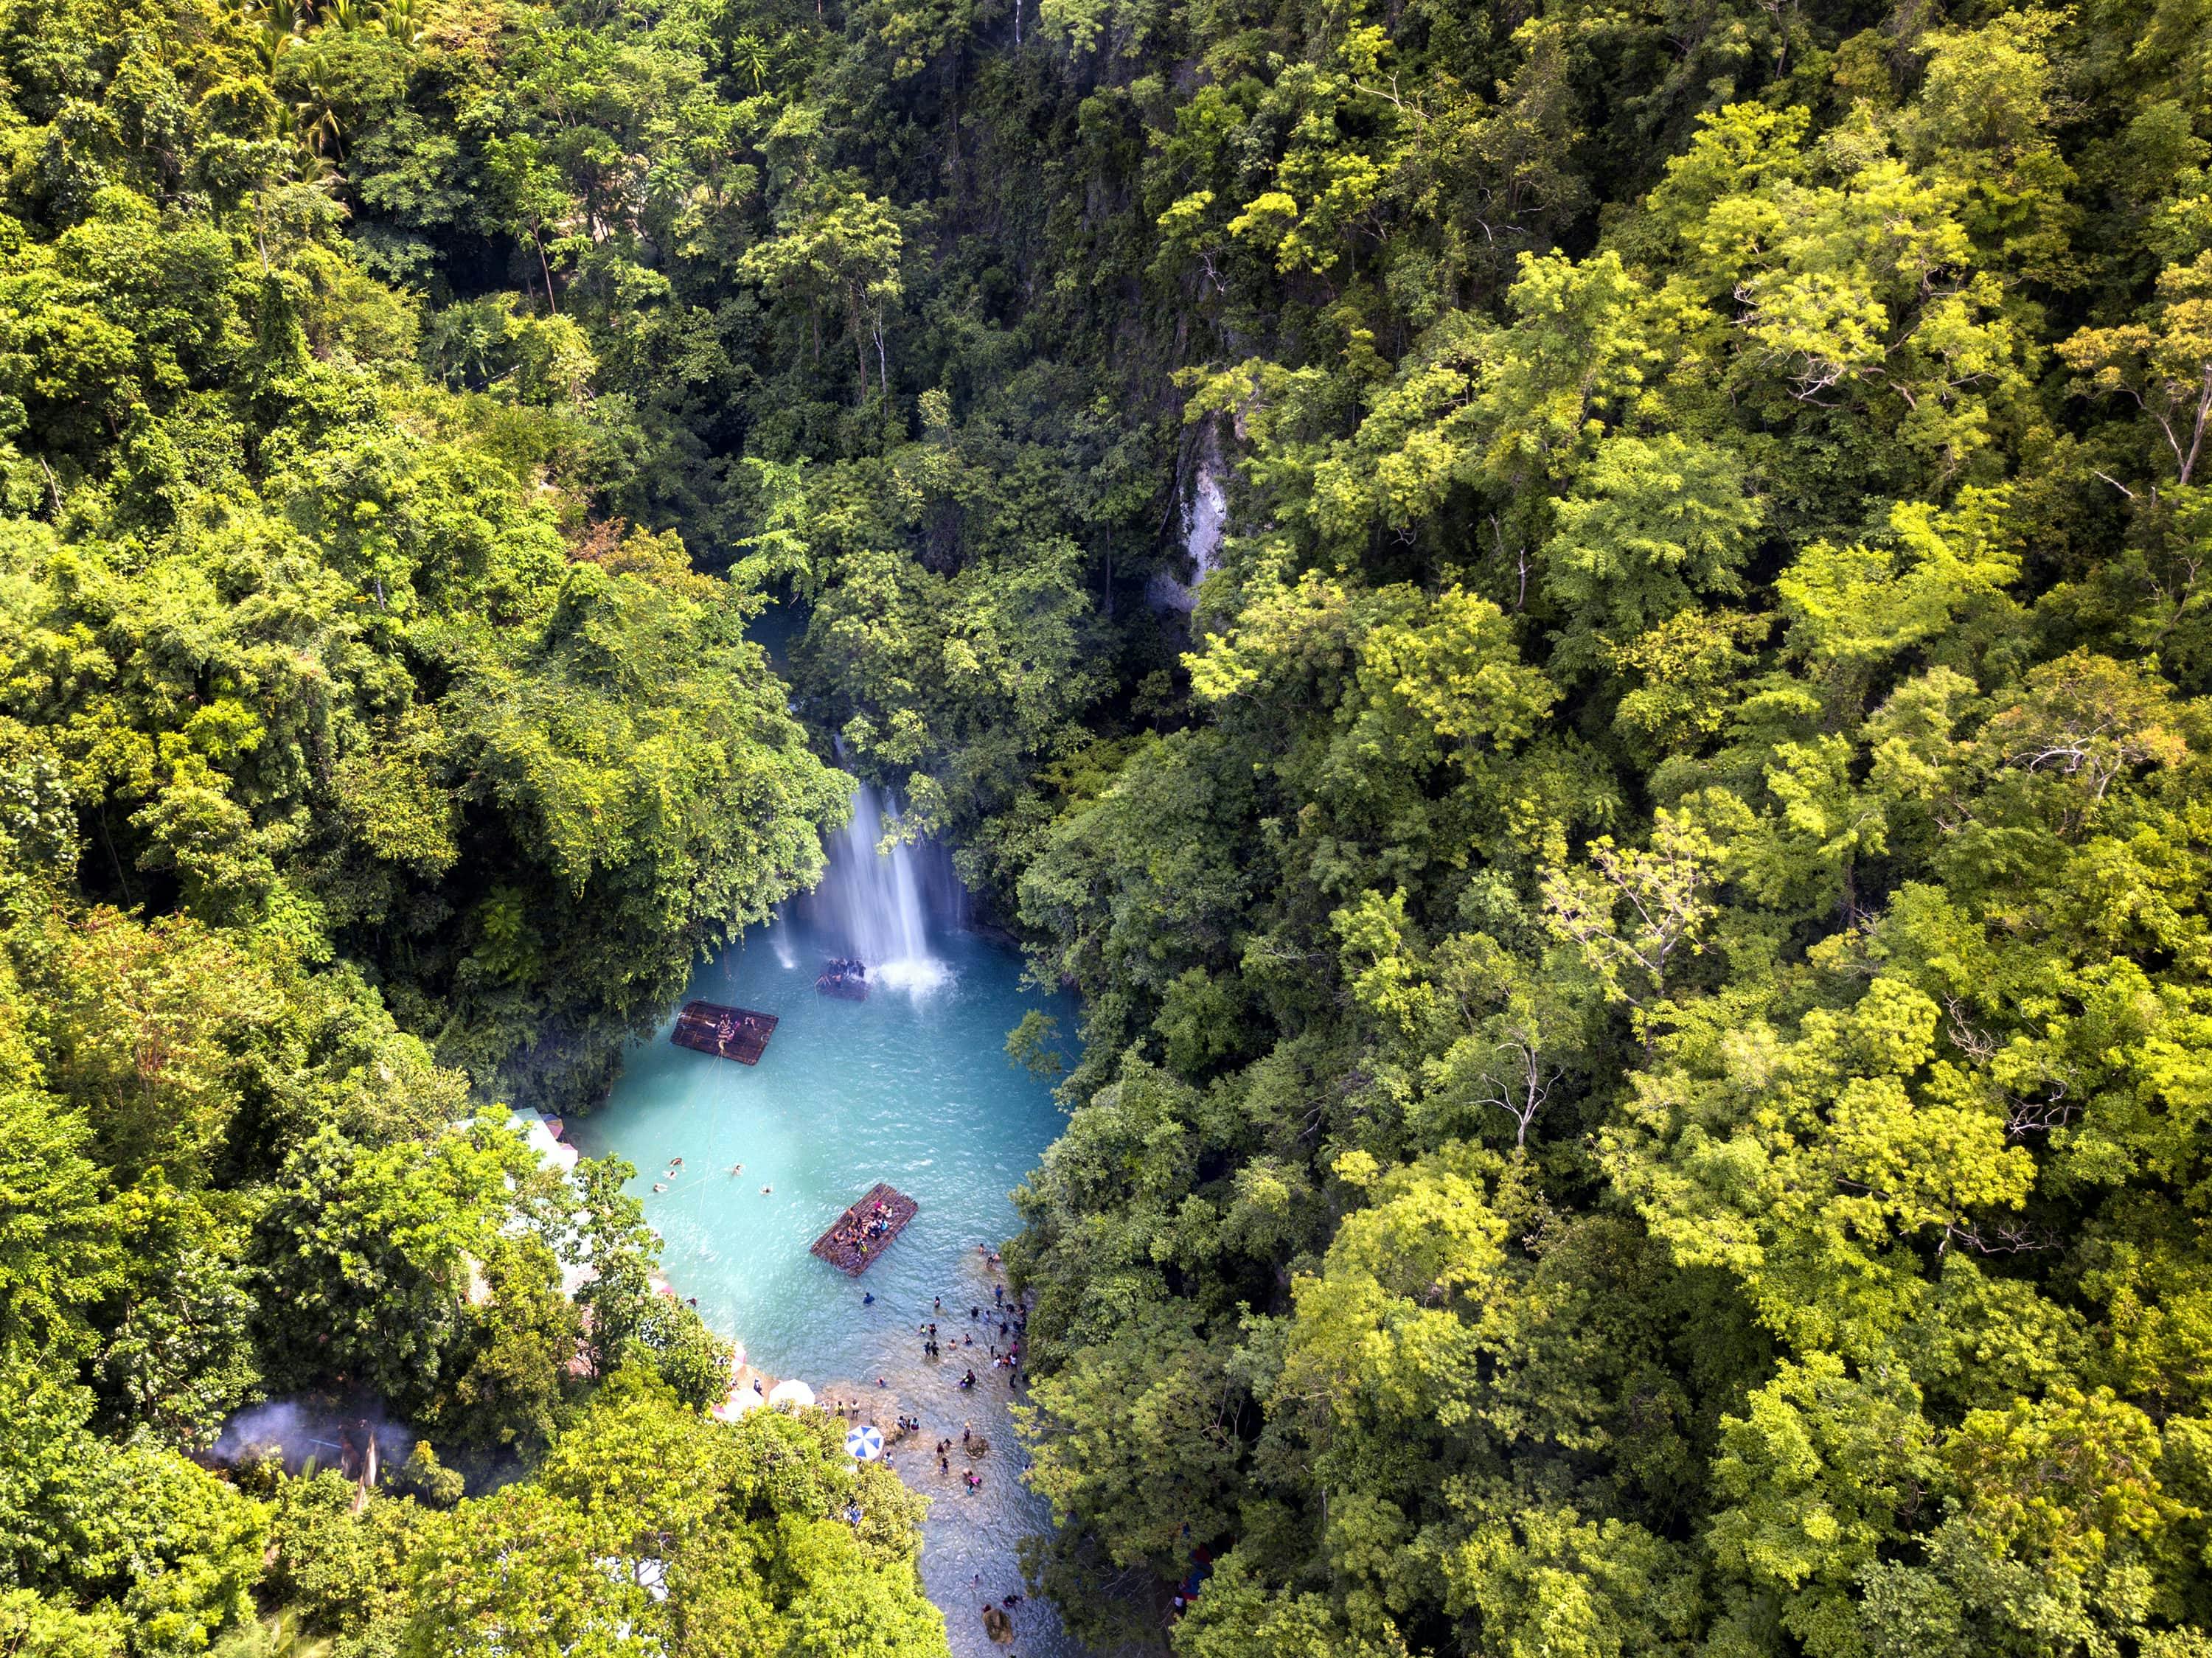 Lush forests and blue waters in Kawasan Falls Cebu